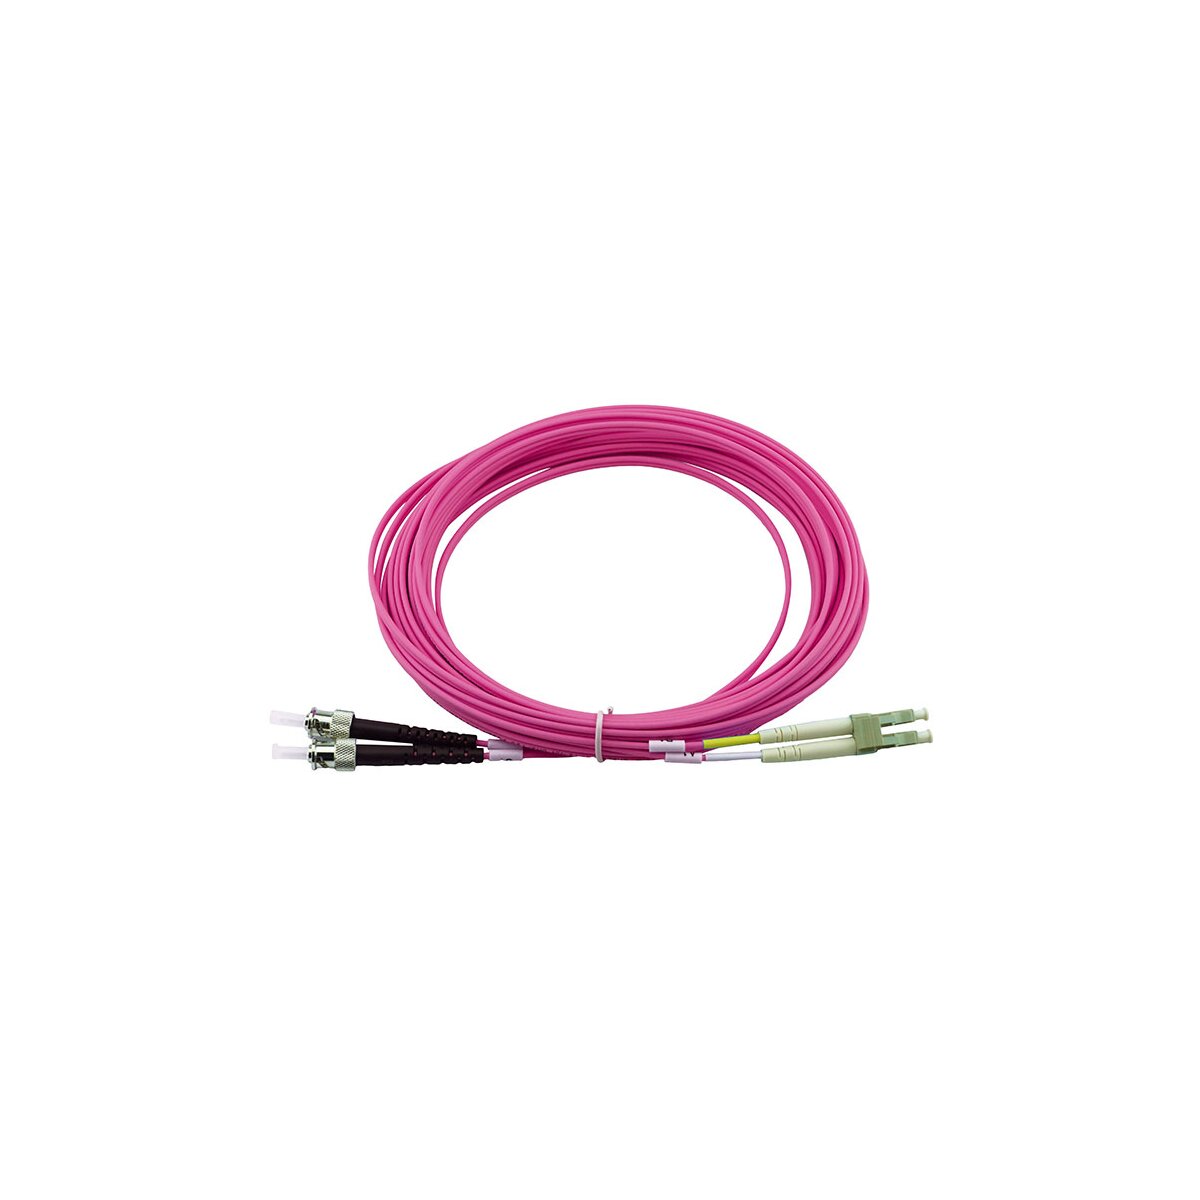 günstig IT Adapter Kabel im Shop & OCTO24 kaufen Sie Online